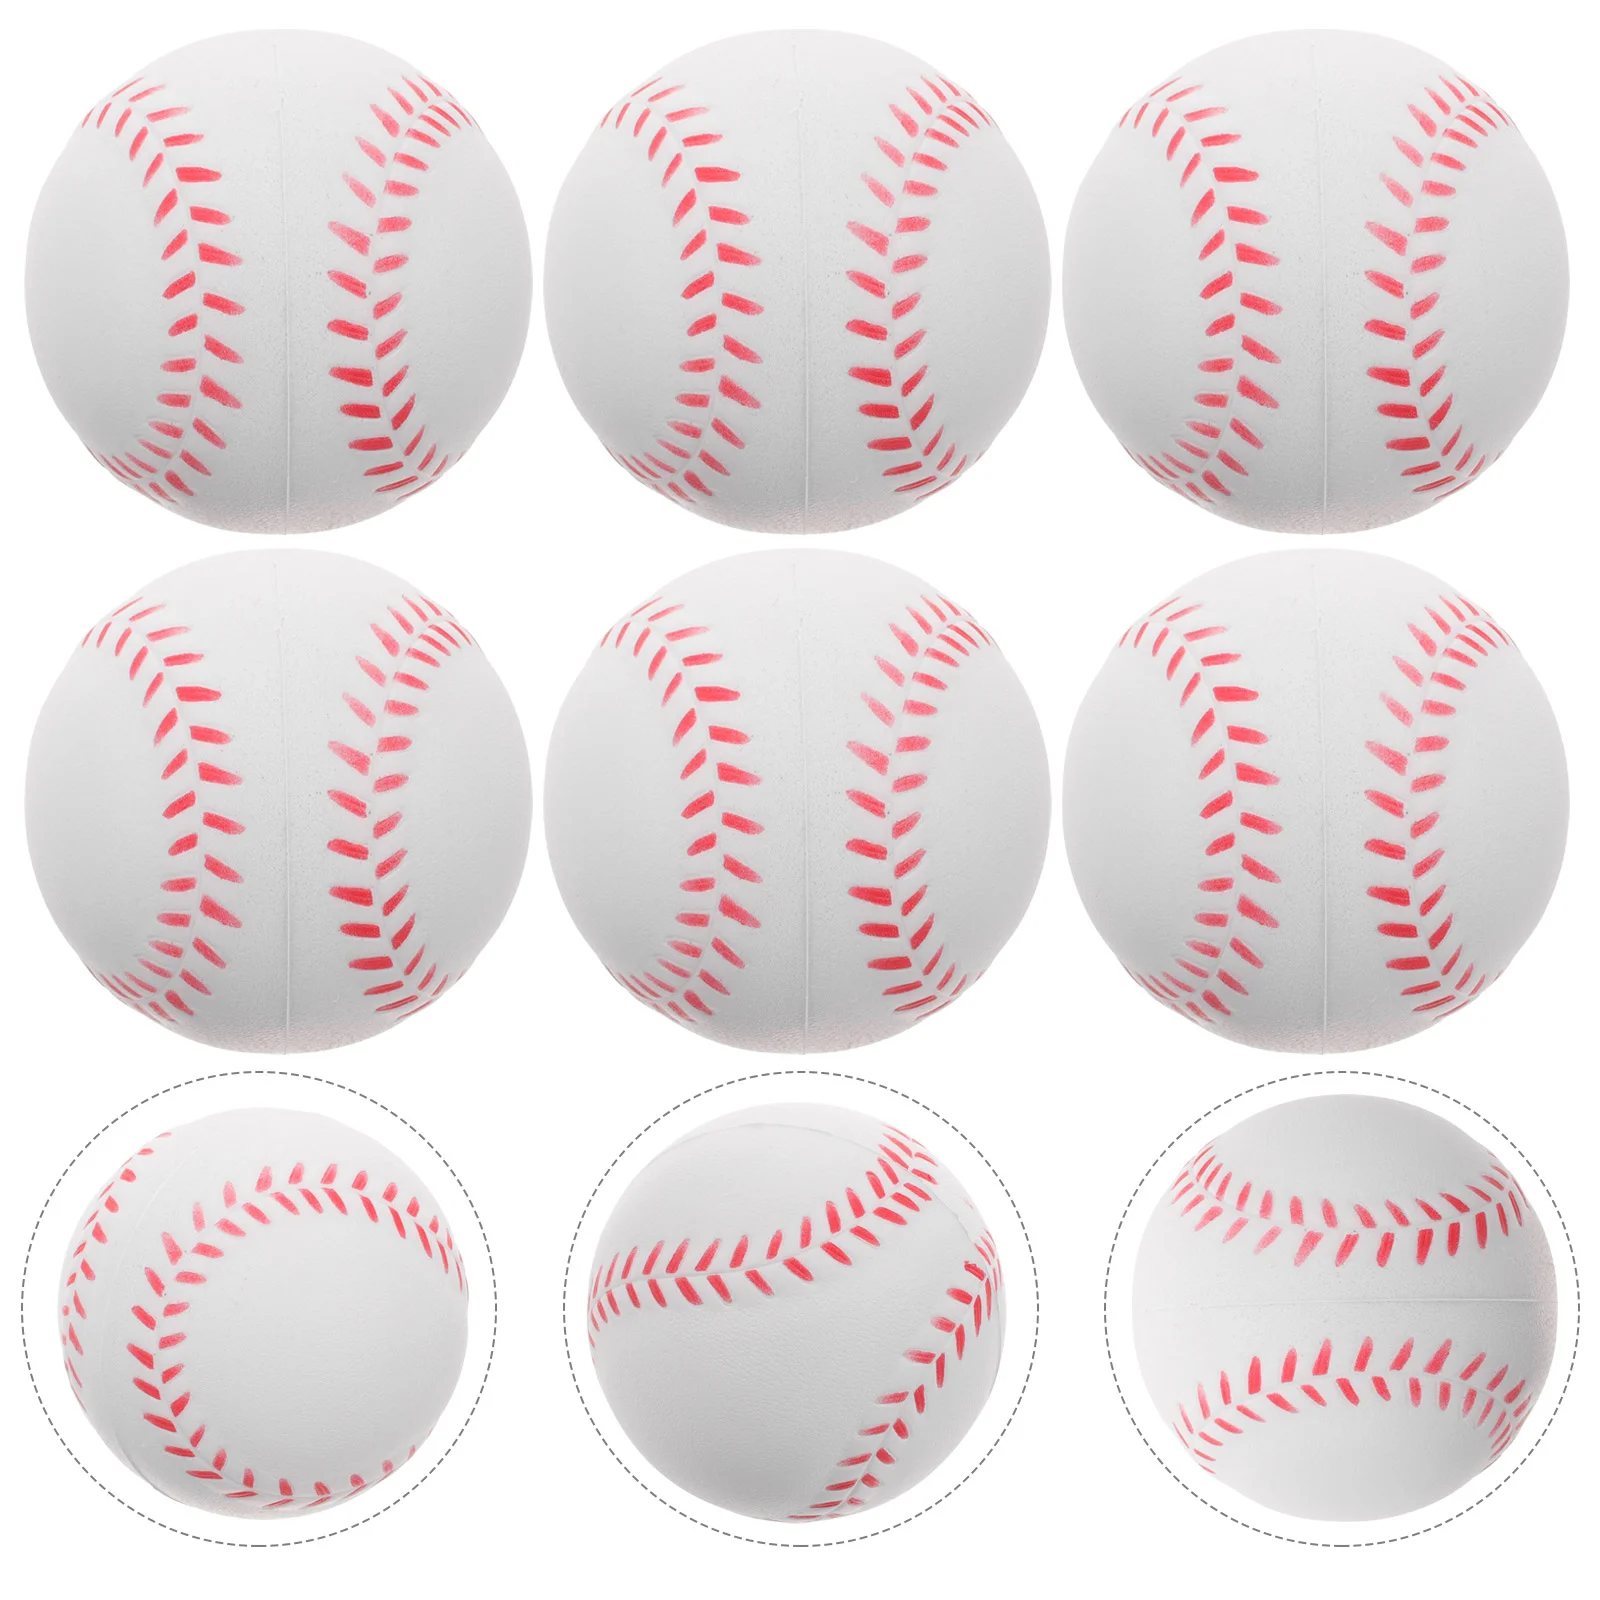 

6 Pcs Sponge Training Baseball Hitting Softball Balls Practice Baseballs Children Toy